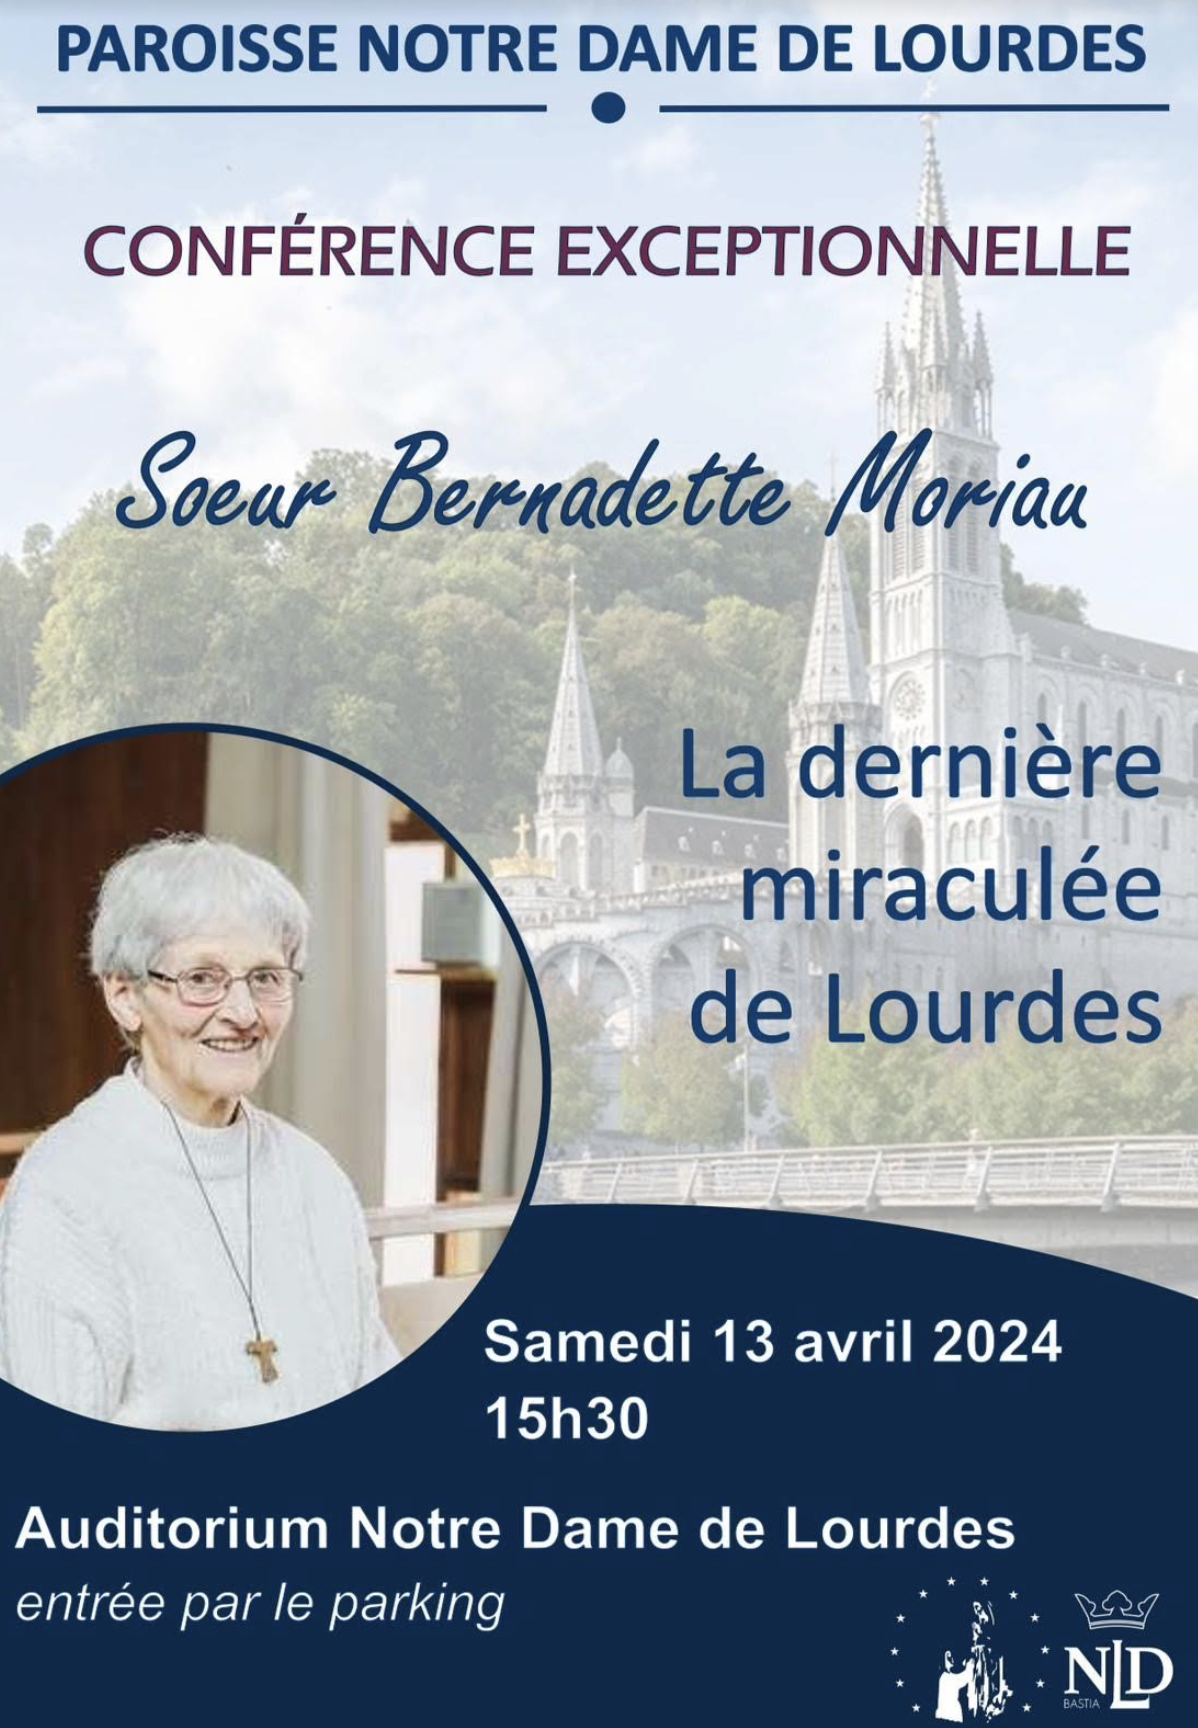 La dernière miraculée de Lourdes attendue à Bastia 